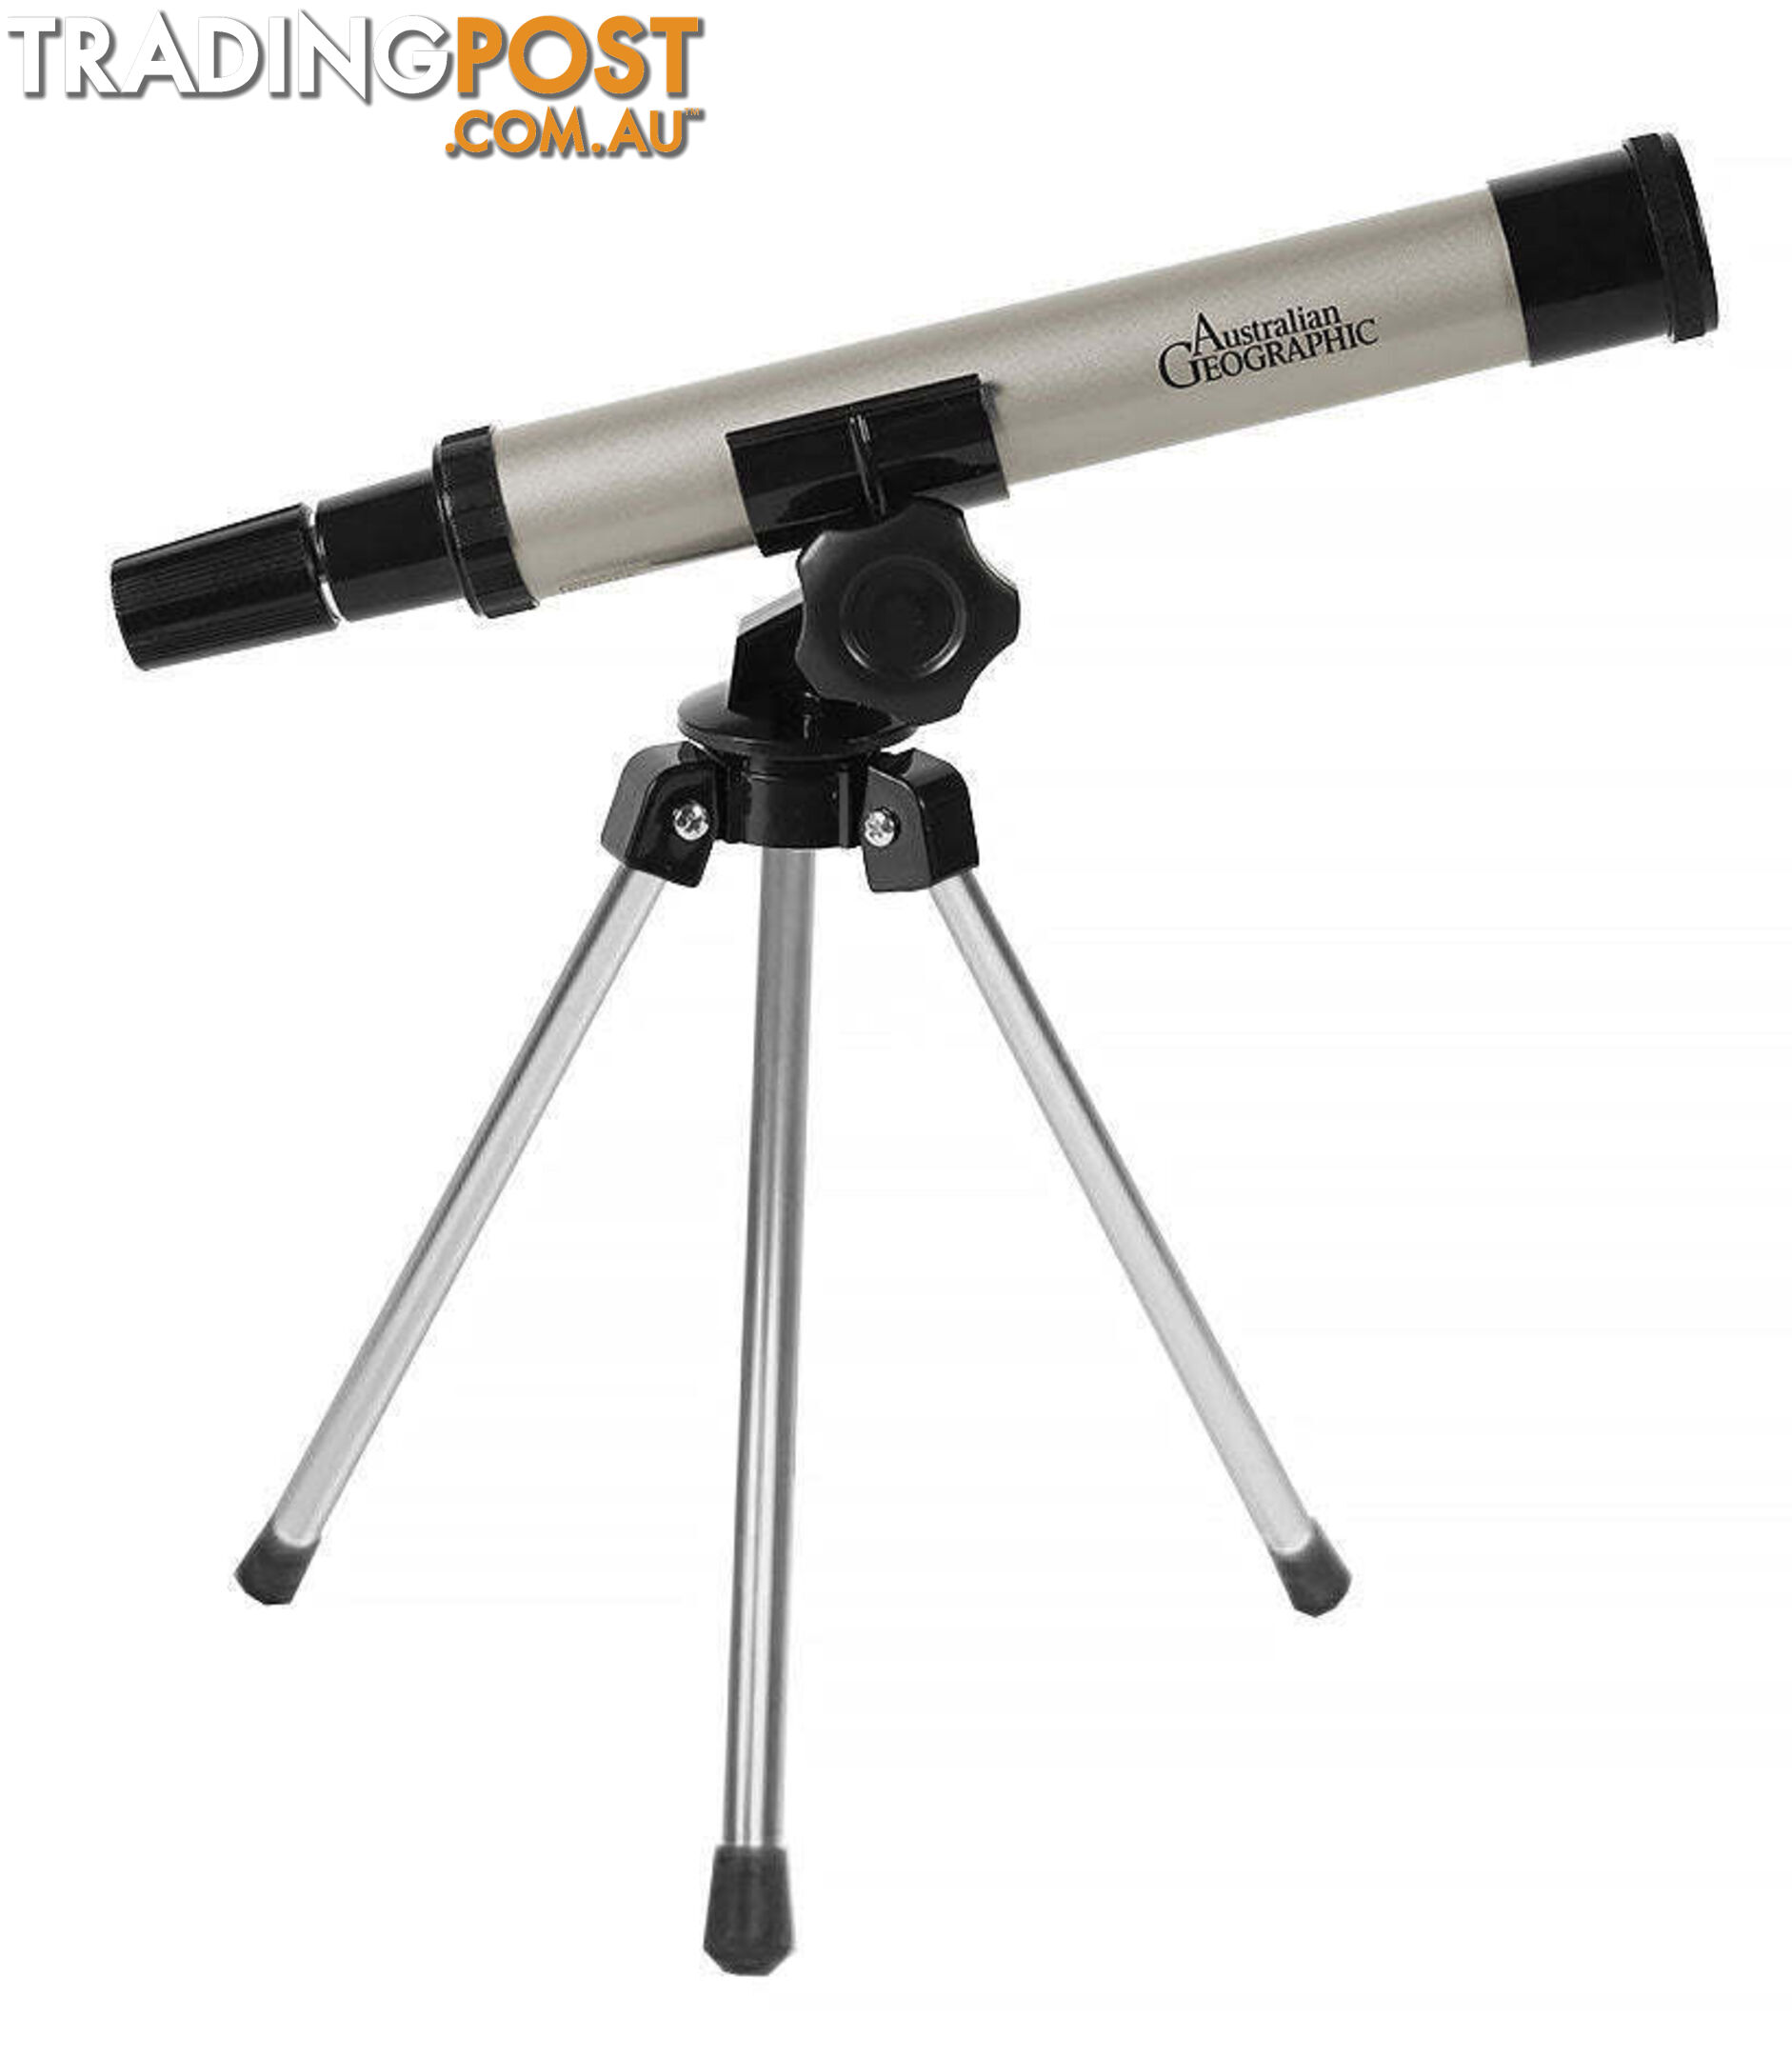 Australian Geographic - 30mm Explorer Telescope - Mdagdstm0030 - 9340816012127